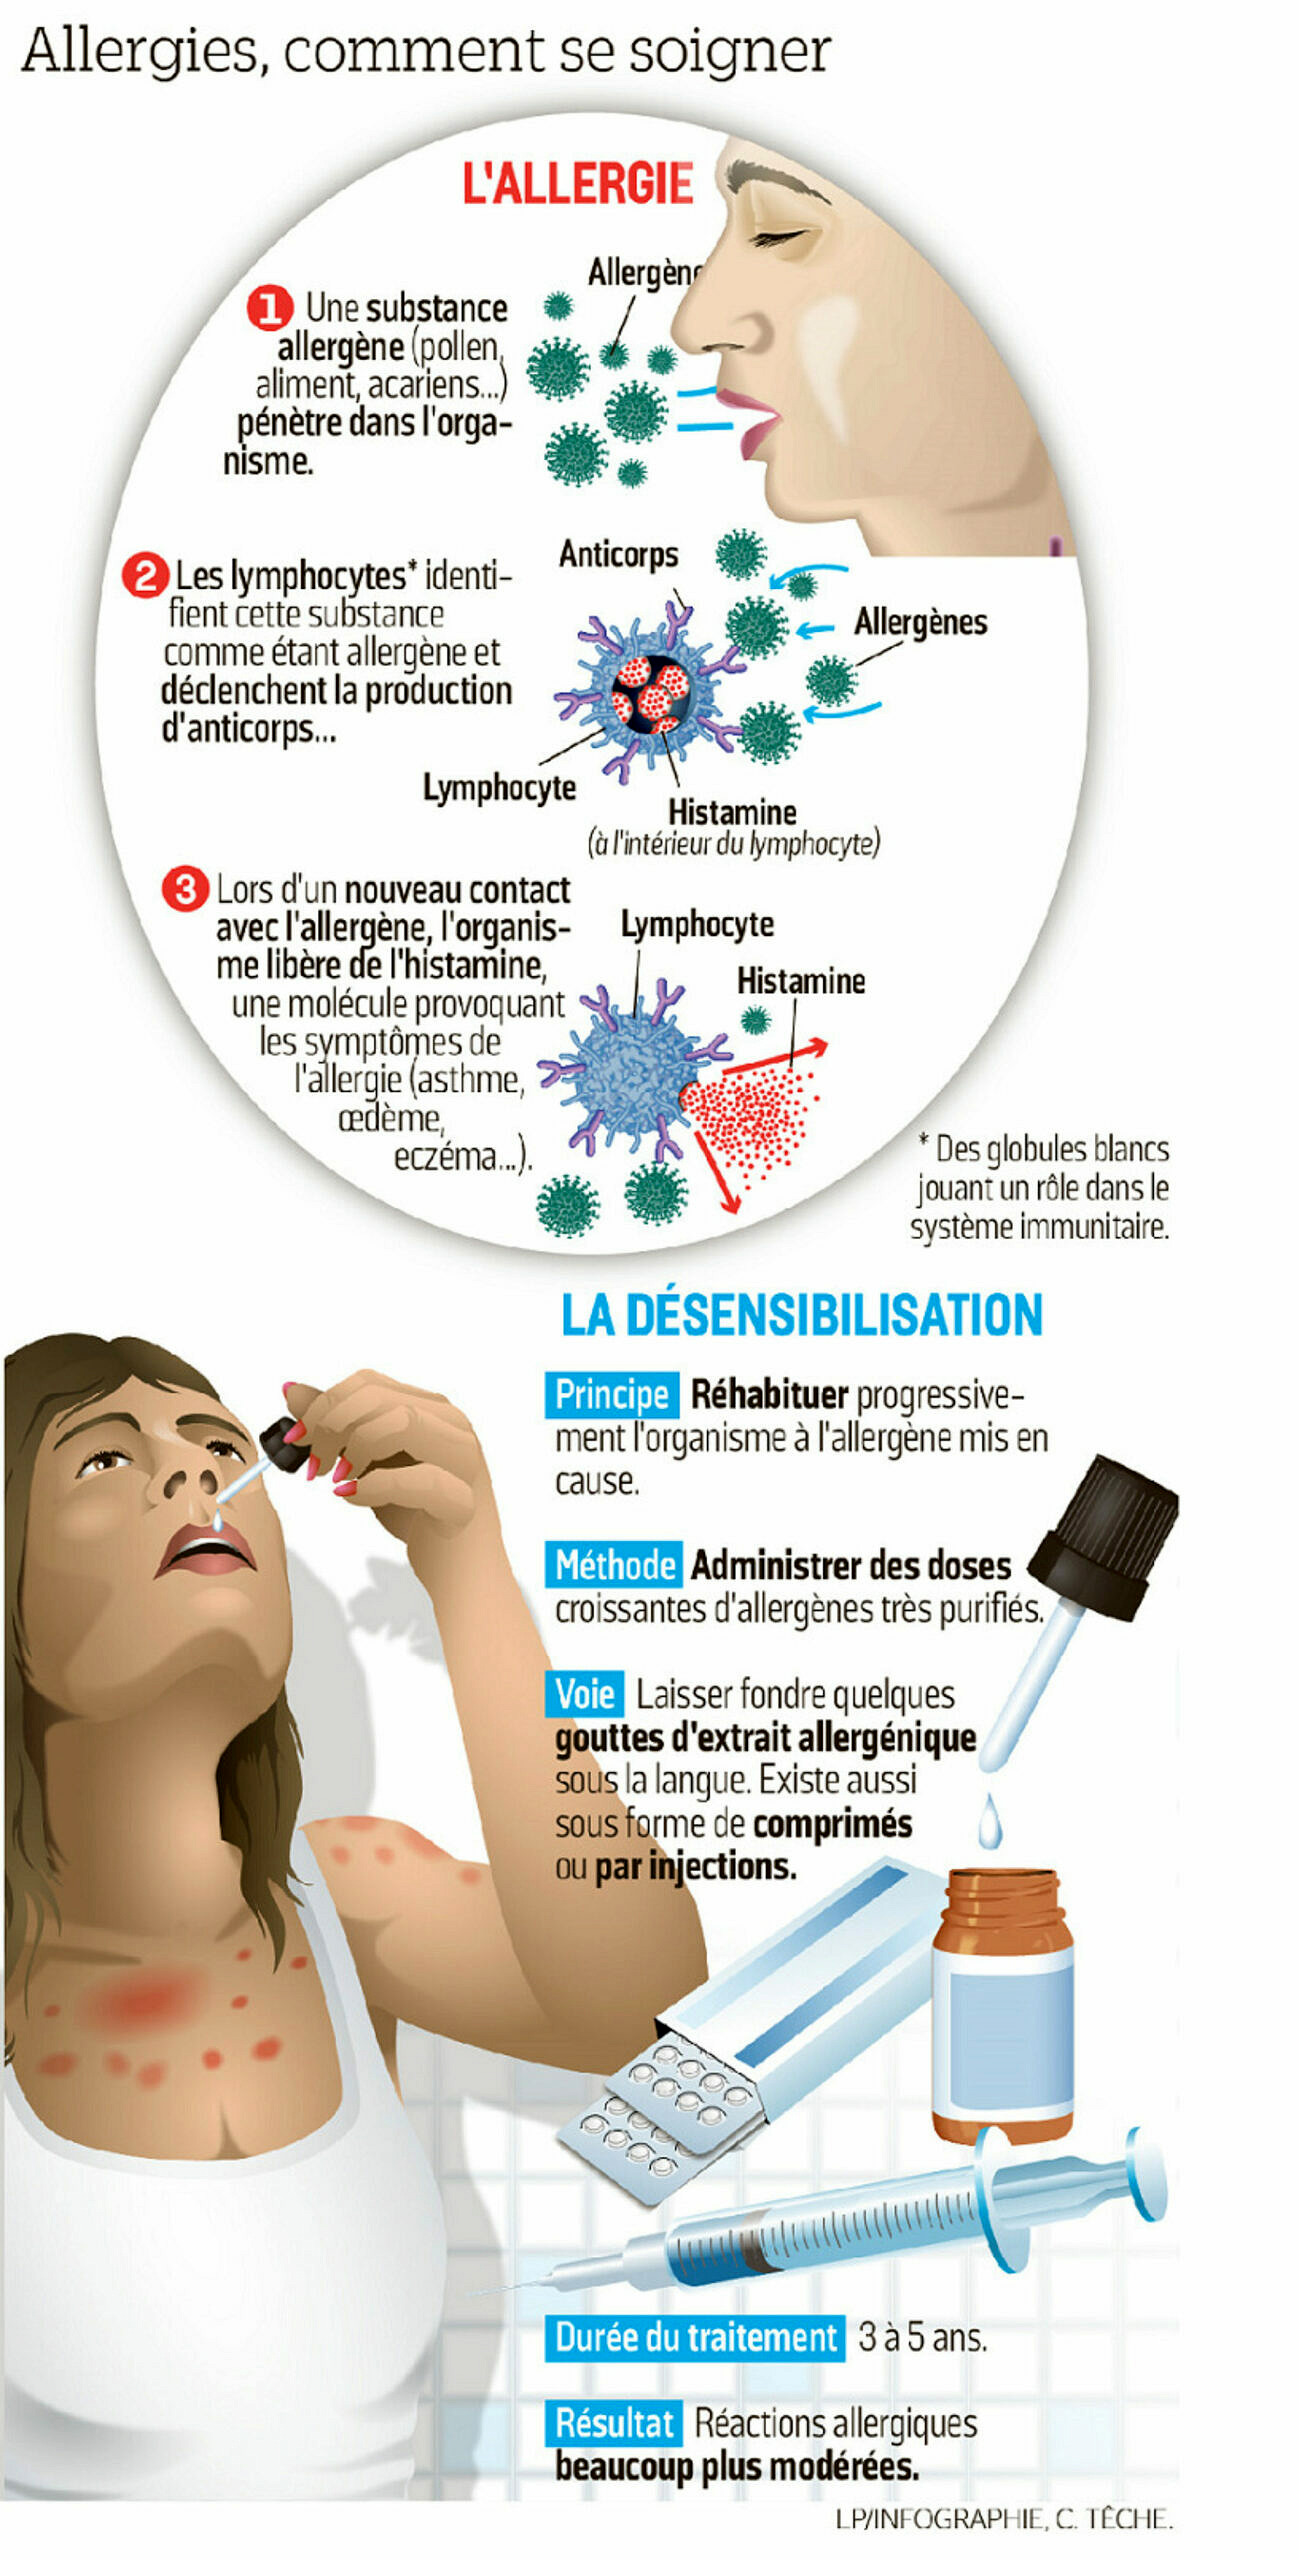 Allergies a La Poussiere Quels Sont Les Symptomes Trucs Et Astuces De Reparation